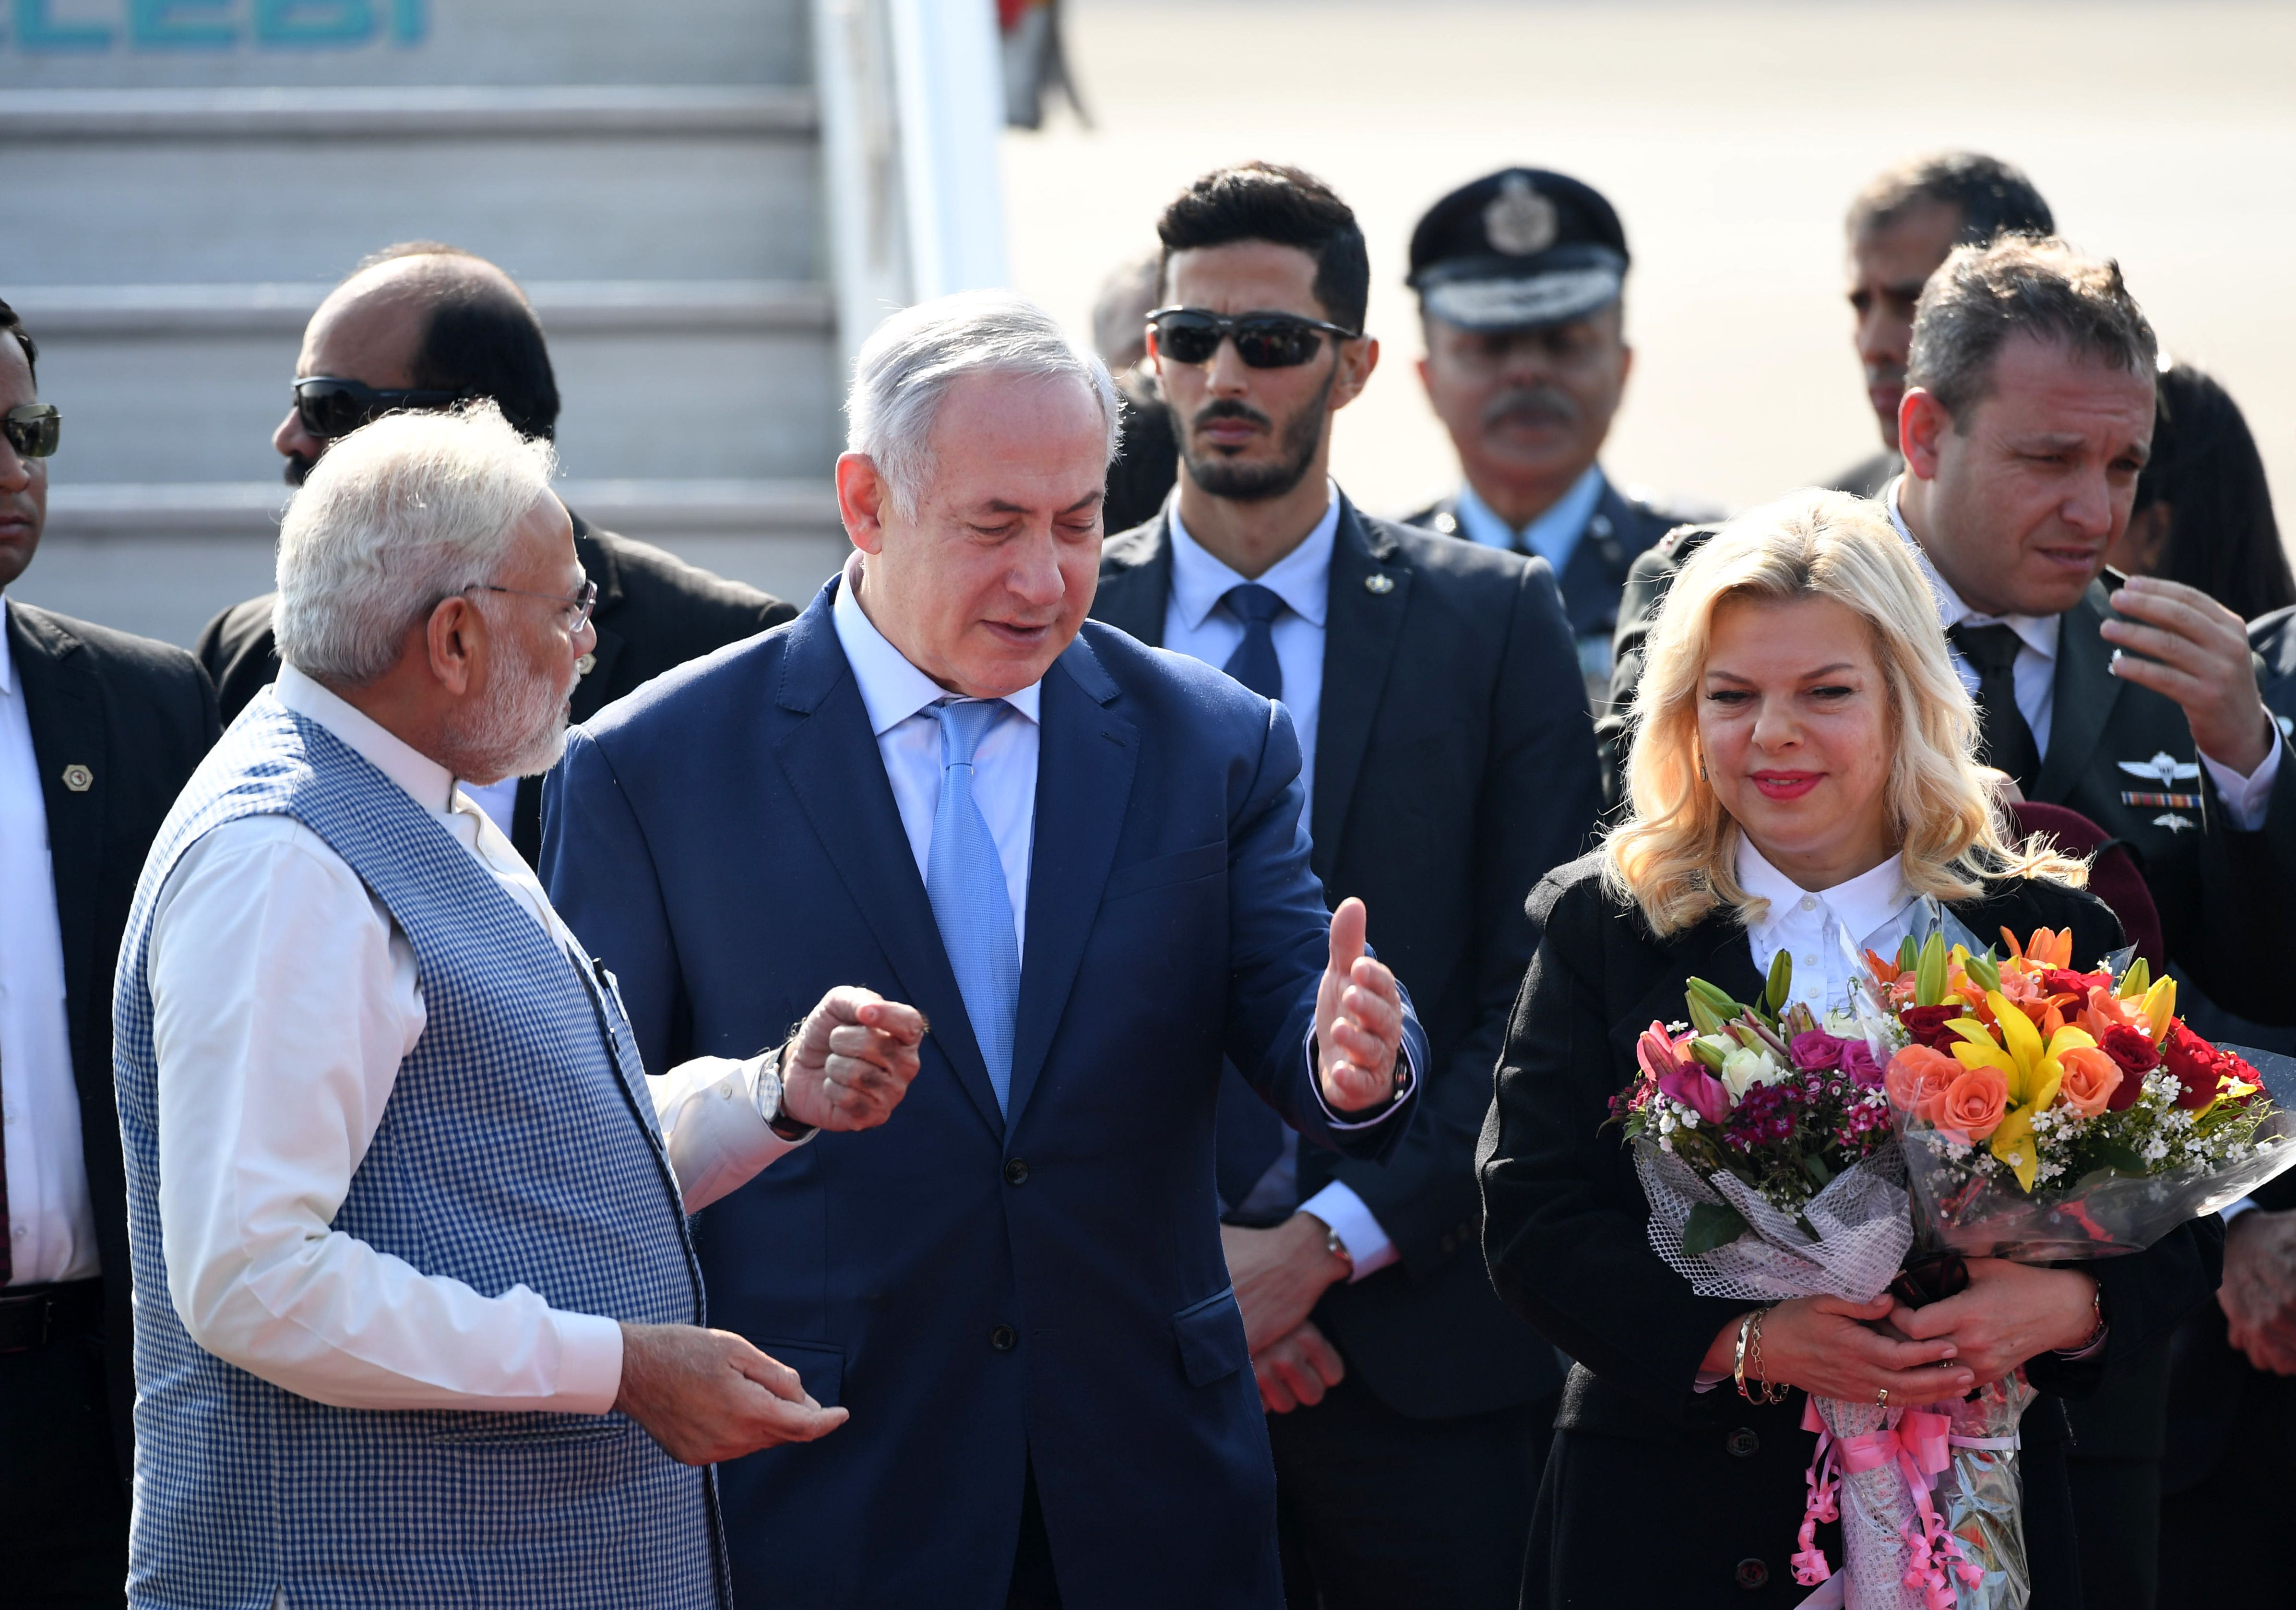 سارة نتنياهو تحمل باقة زهور خلال زيارة الهند